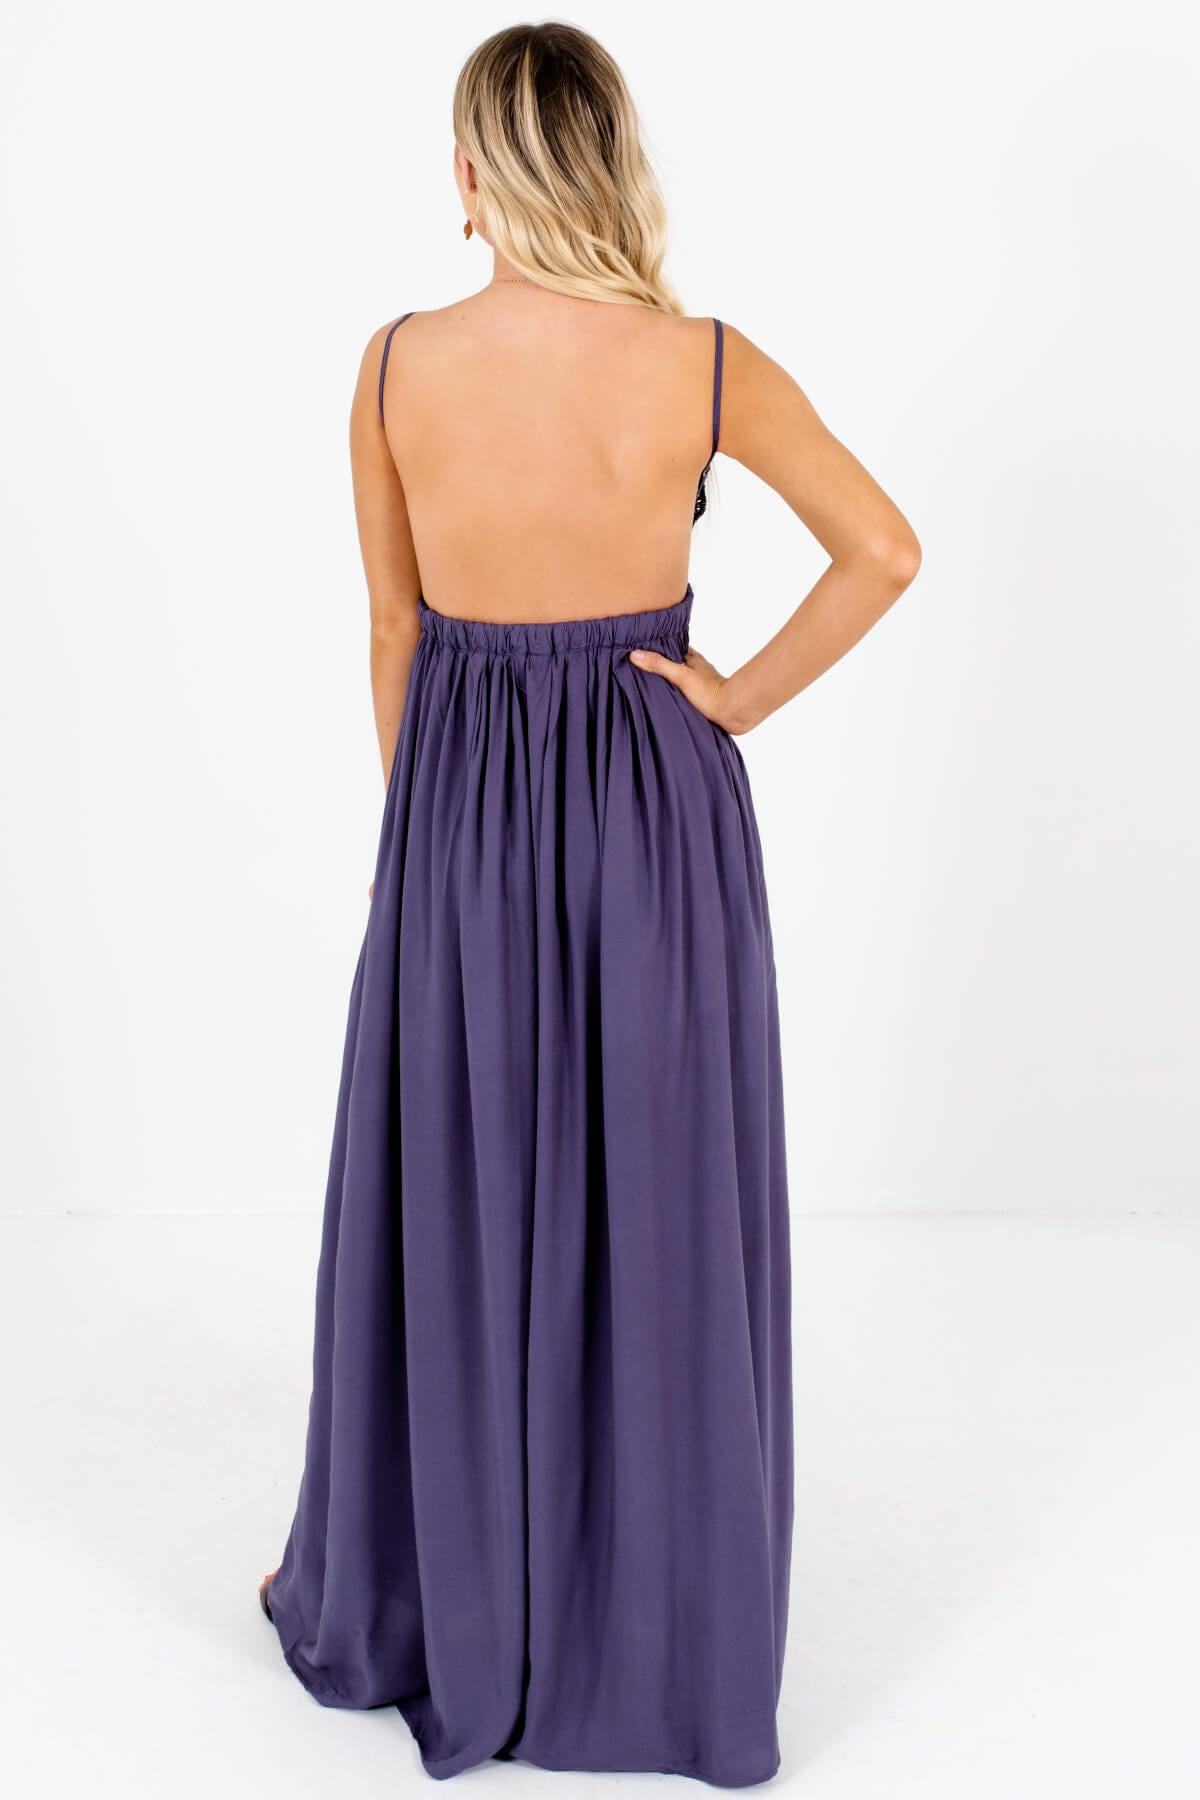 Slate Purple Open Back Long Flowy Maxi Sundresses for Women